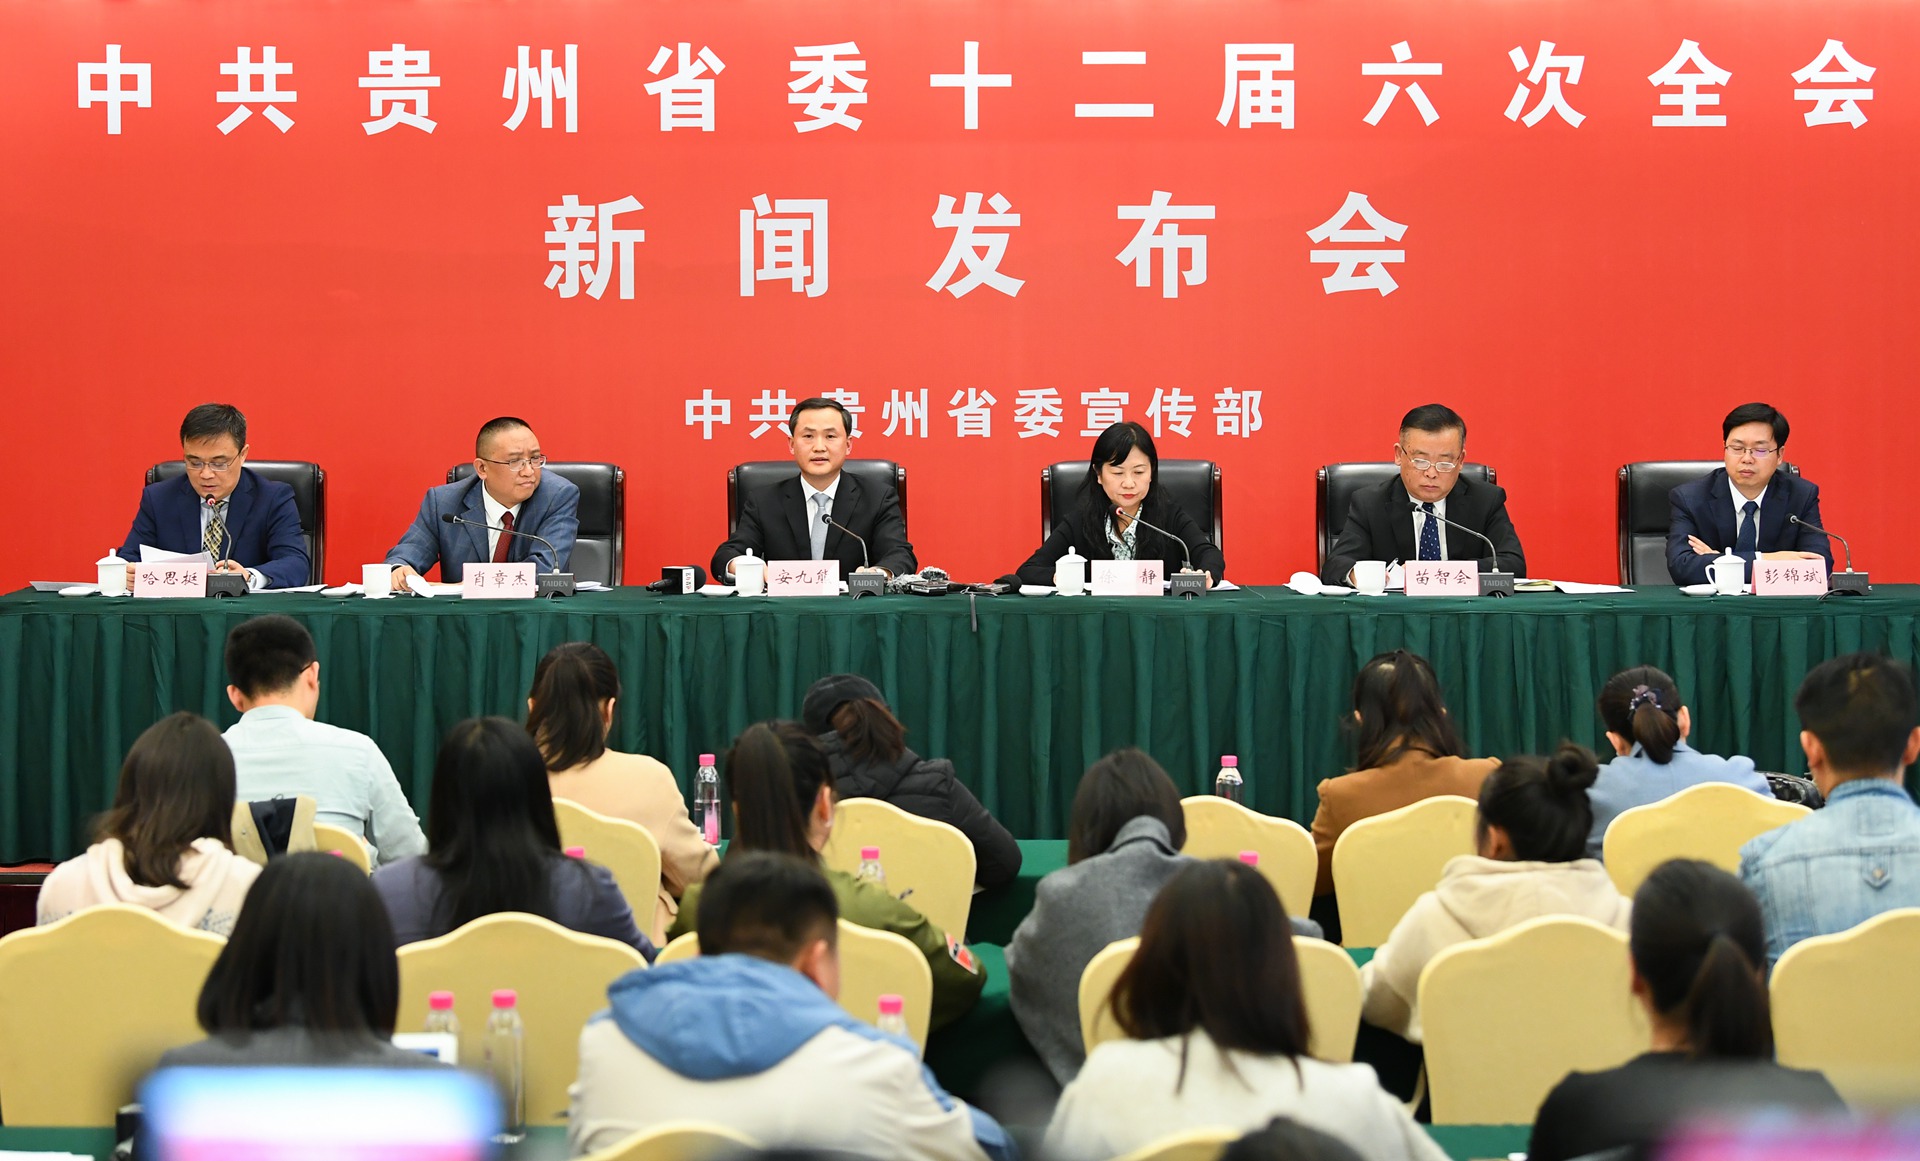 2.----11月14日下午，贵州省第十二届委员会第六次全体会议新闻发布会在贵阳举行。图为发布会现场。杜朋城 摄影.jpg